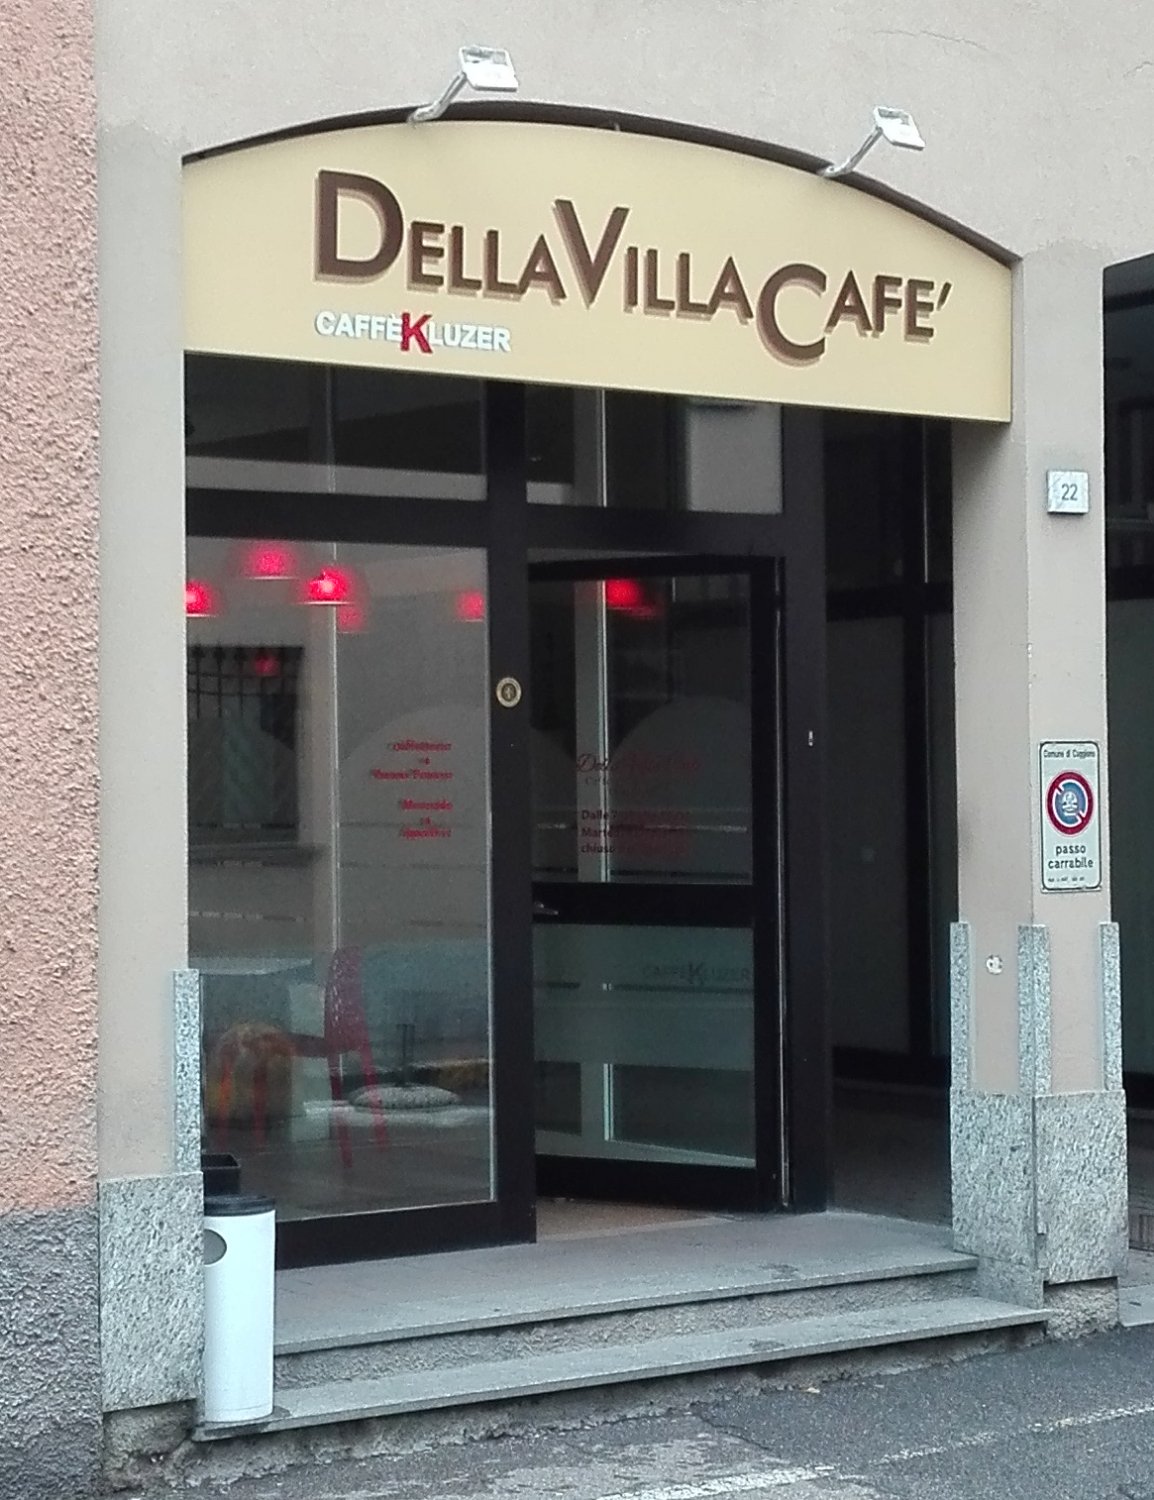 Della Villa Cafè, Cuggiono